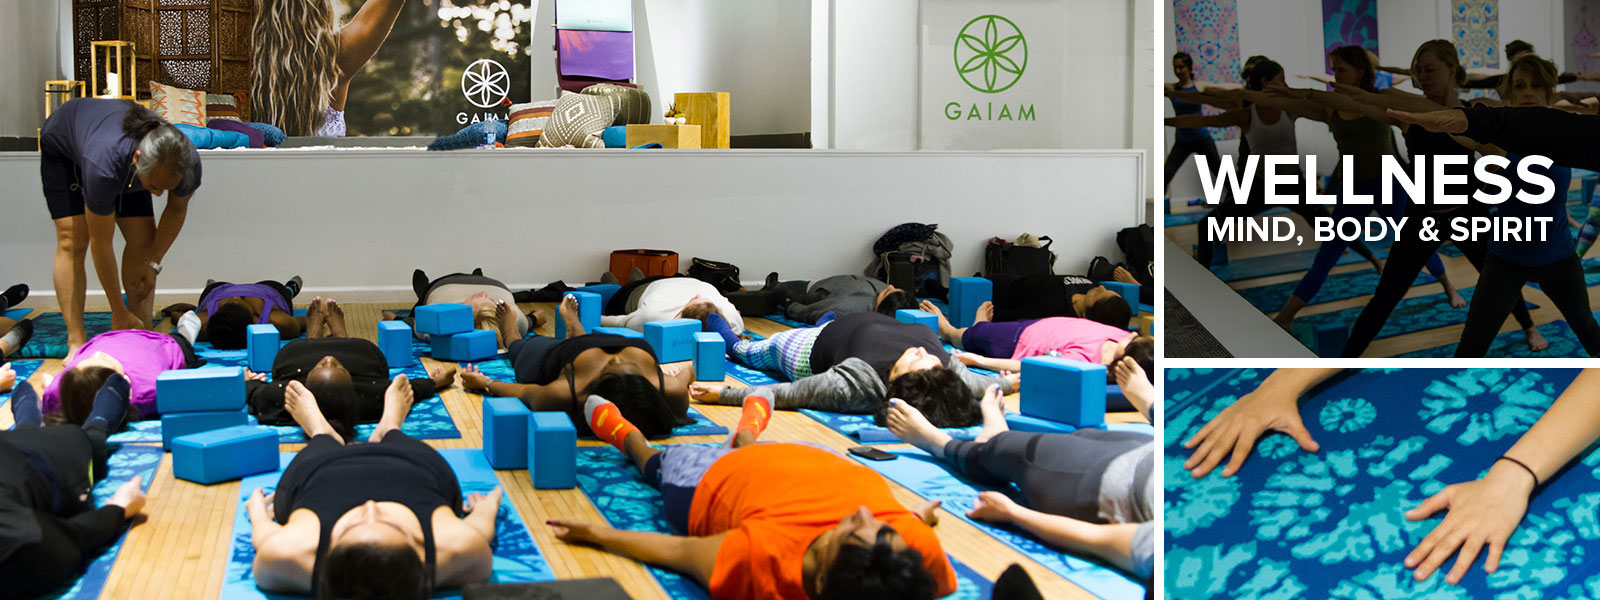 Classes at the Gaiam Wellness Studio